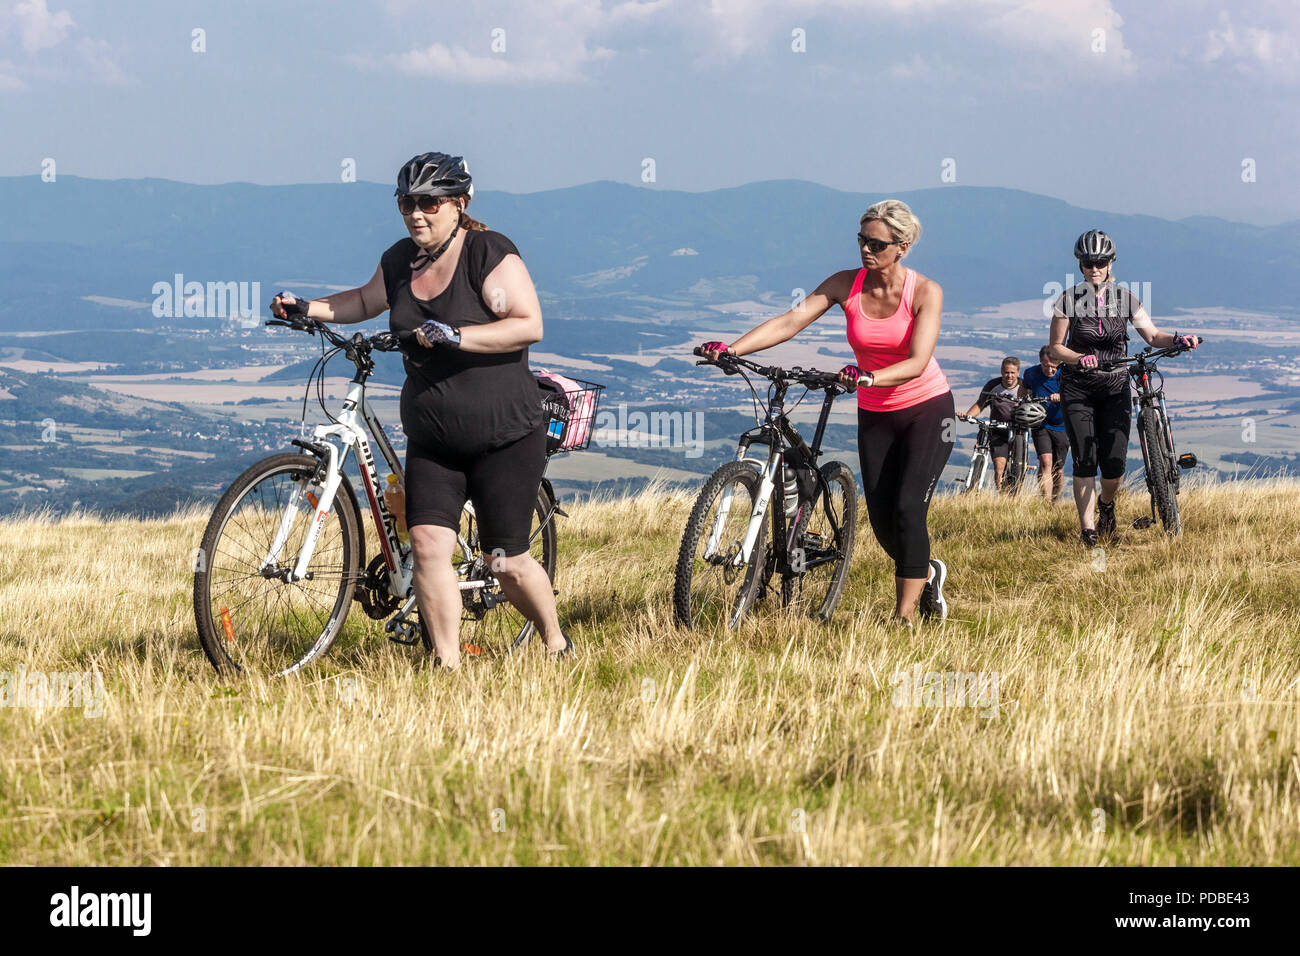 Les femmes font du vélo, les cyclistes font du vélo sur un sentier de montagne, Velka Javorina montagne, frontière slovaque tchèque dans les Carpates blanches femmes poussant une montée Banque D'Images